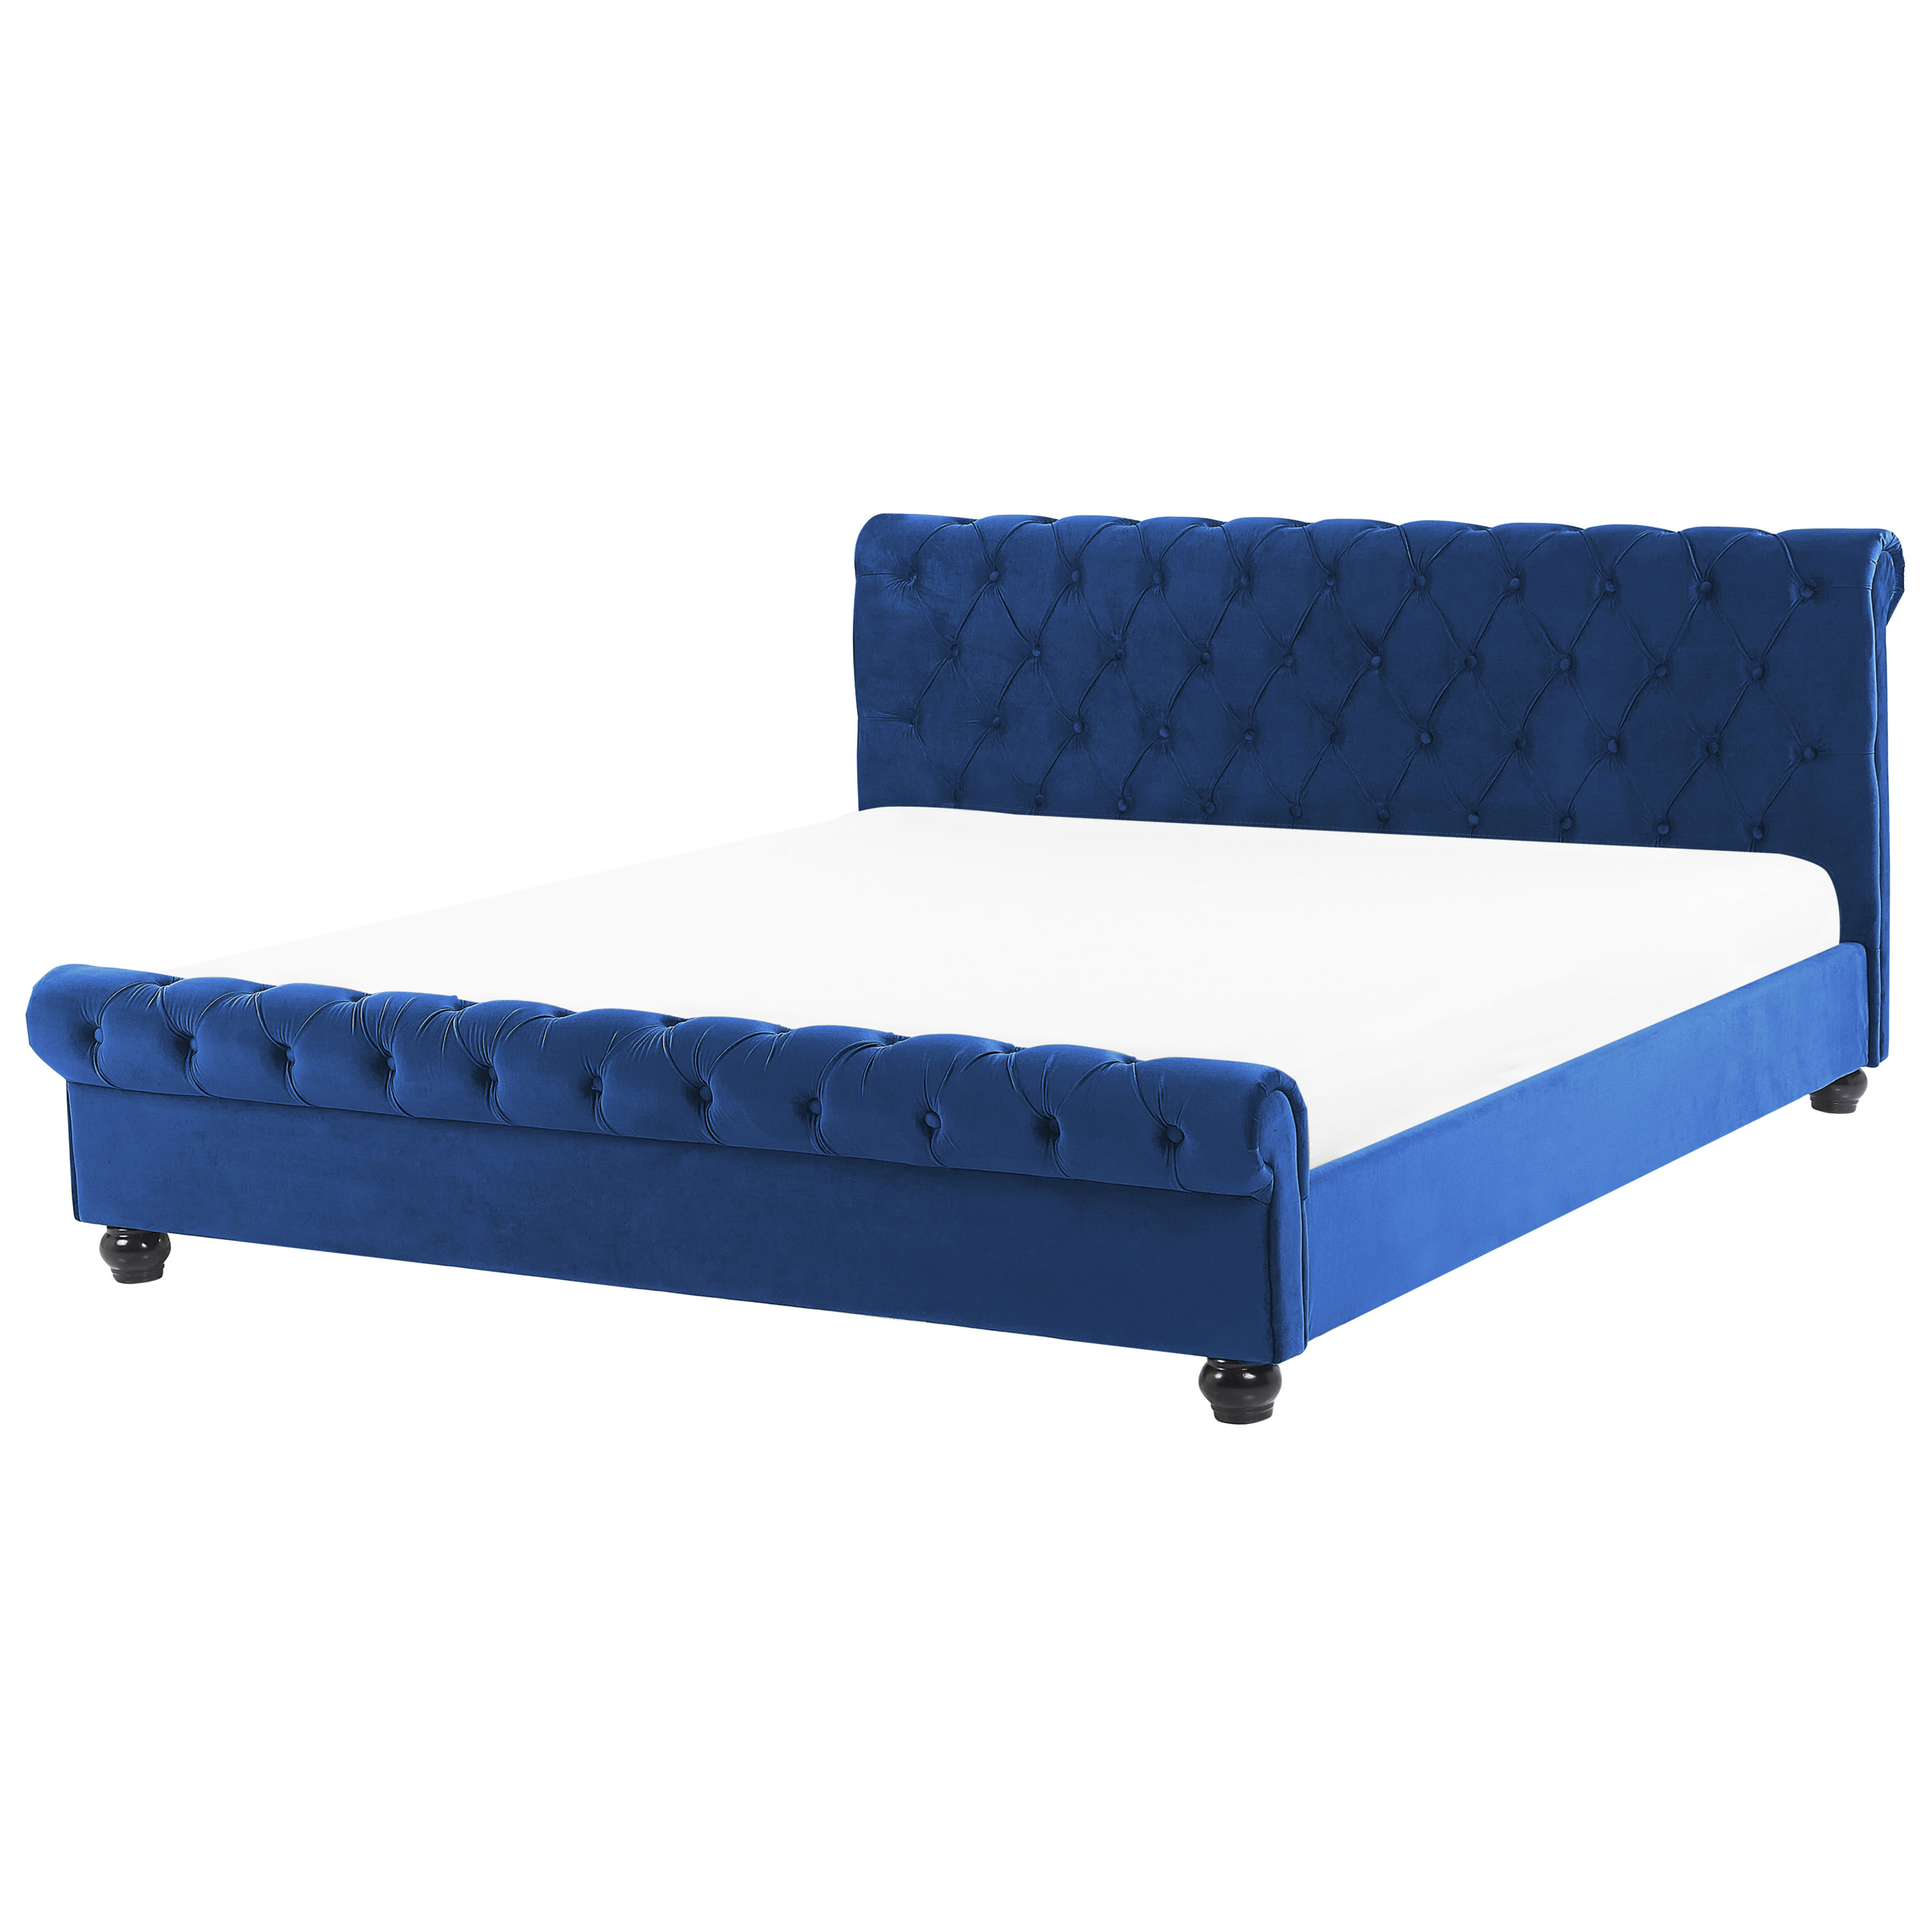 Beliani Bed Frame Blue Velvet Upholstery Black Wooden Legs Super King Size 6ft Buttoned Glam